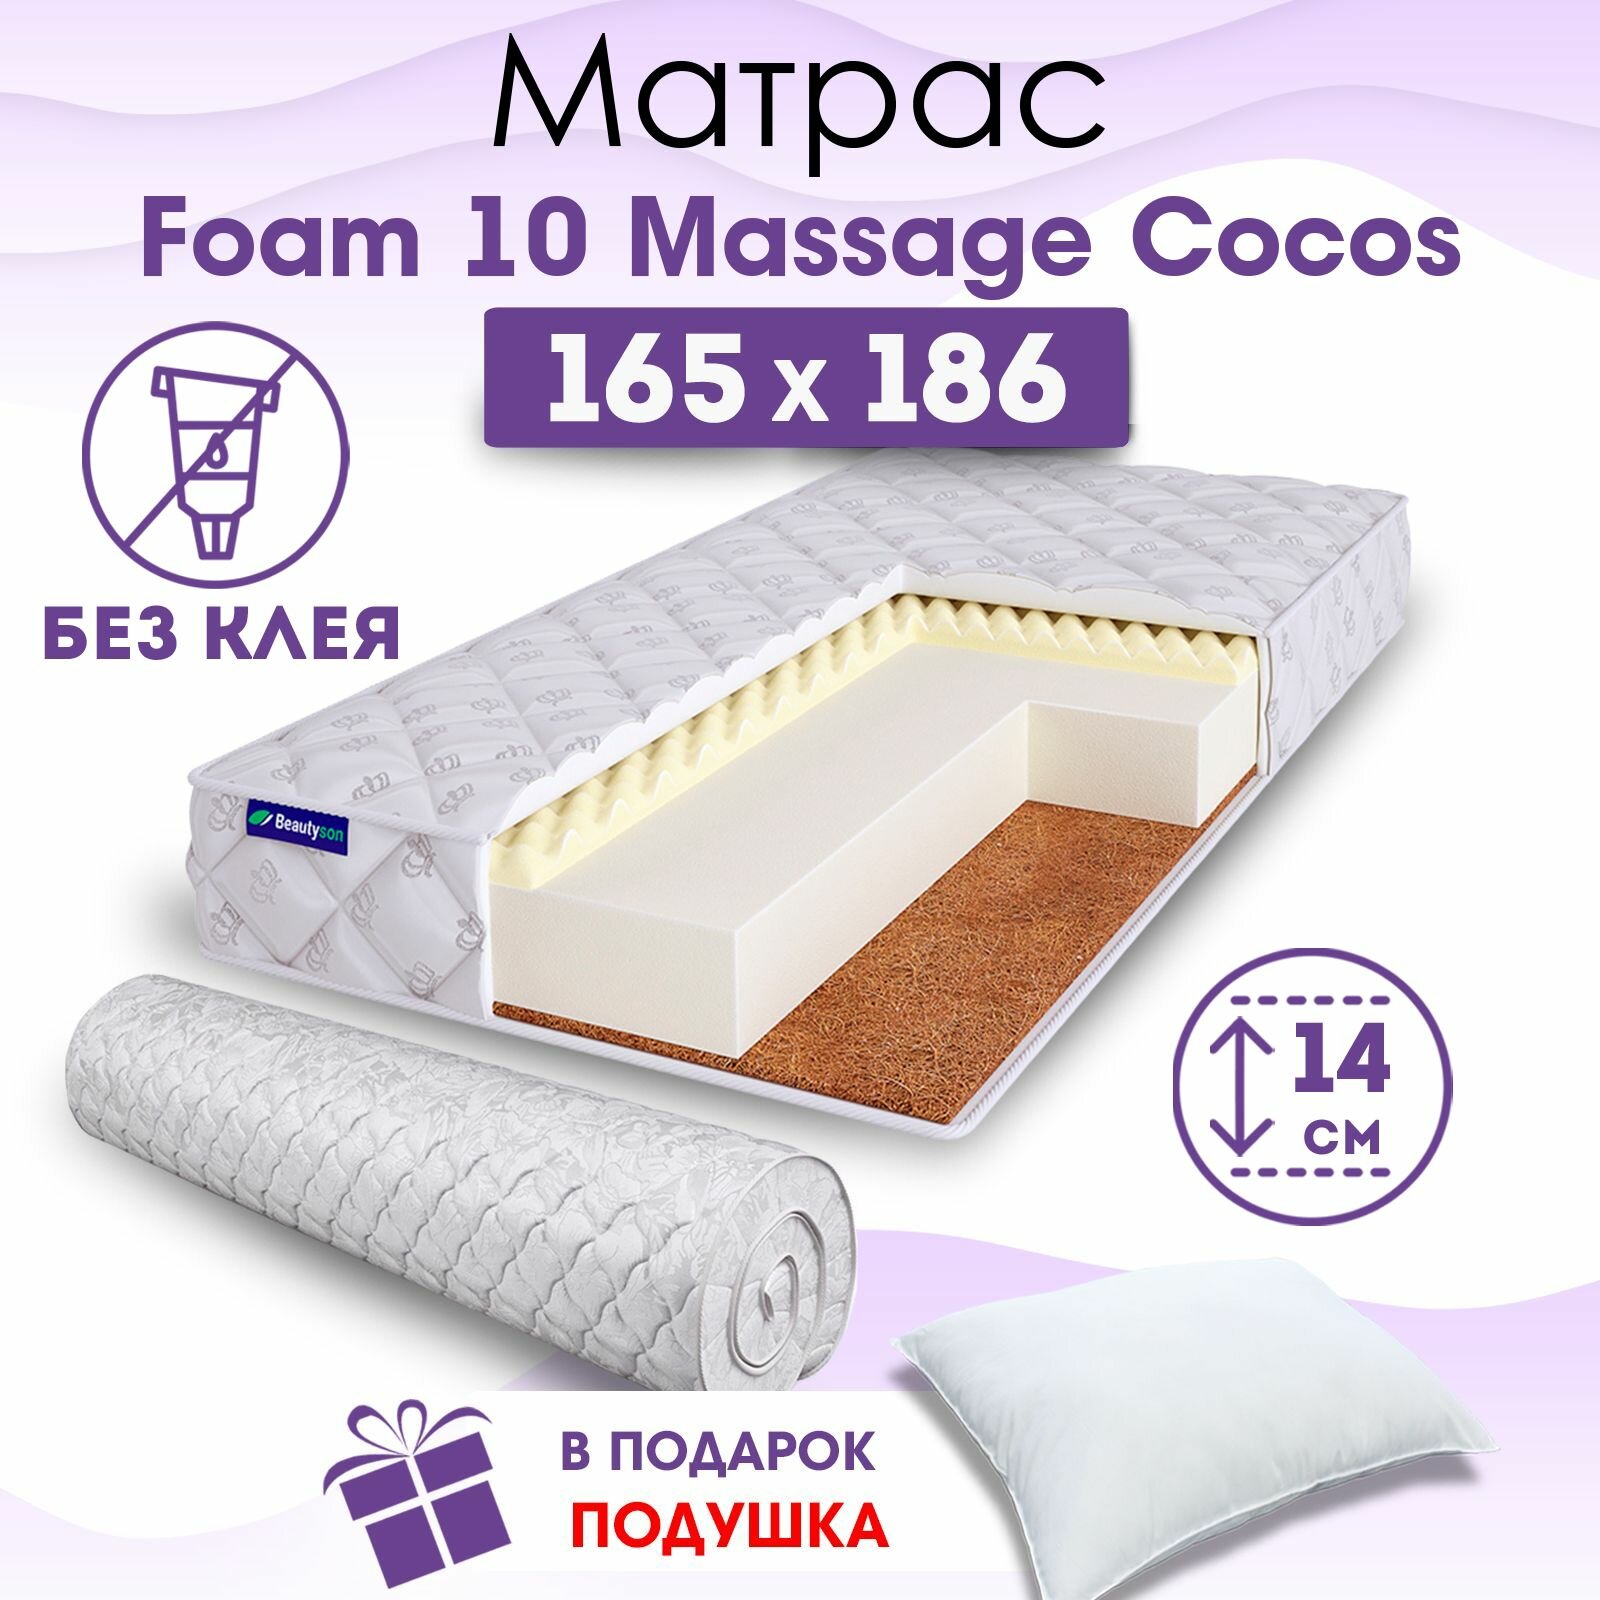 Ортопедический матрас Beautyson Foam 10 Massage Cocos без клея, 165х186, 14 см, беспружинный, двухспальный, на кровать, для дивана, мягкий, не высокий